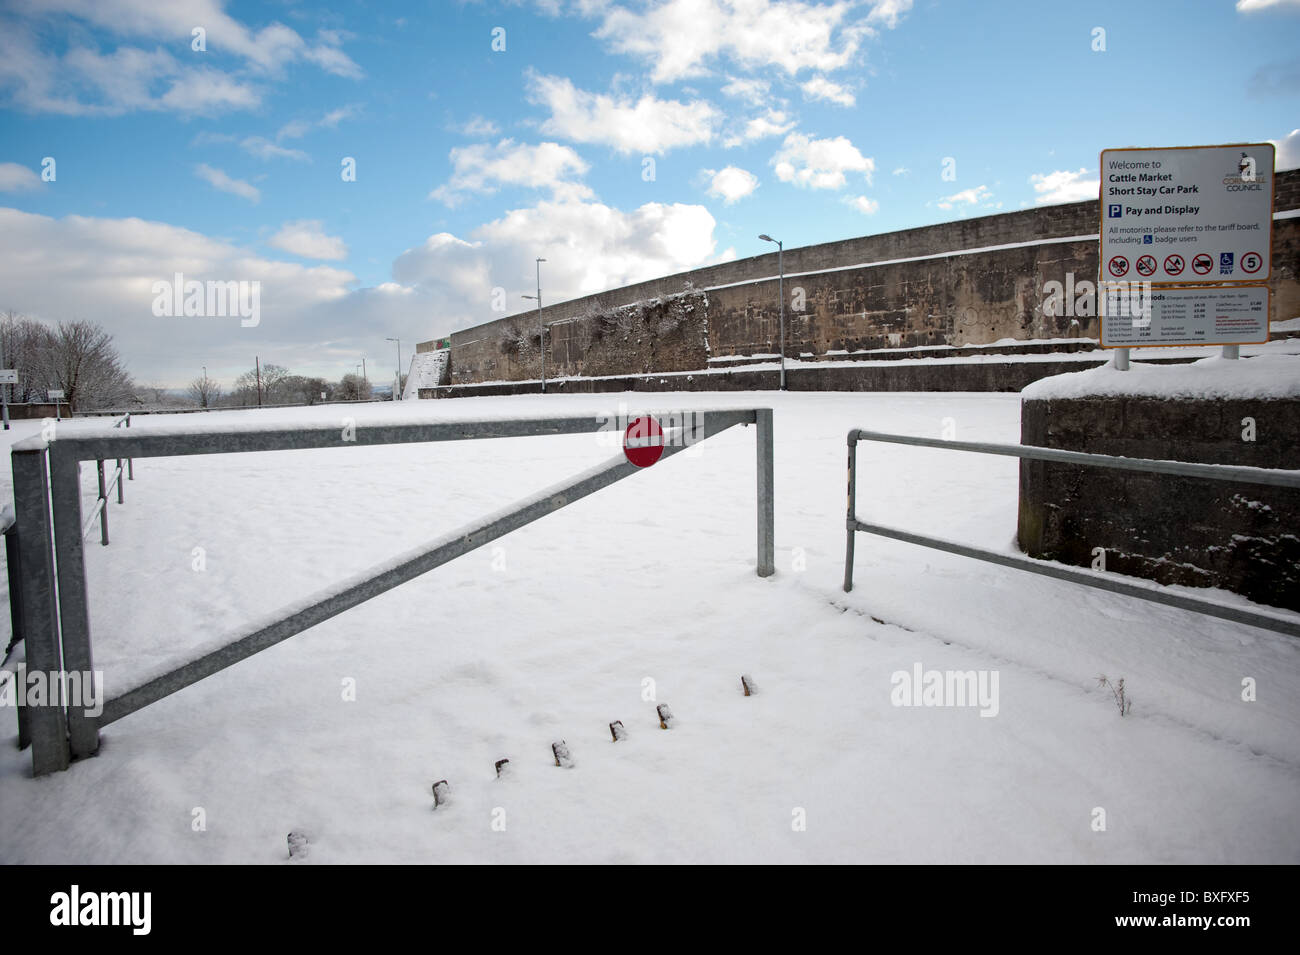 Il mercato del bestiame parcheggio auto a Launceston UK ricoperta di neve si è chiuso con un segnale di divieto di accesso sulla barriera di accesso Foto Stock